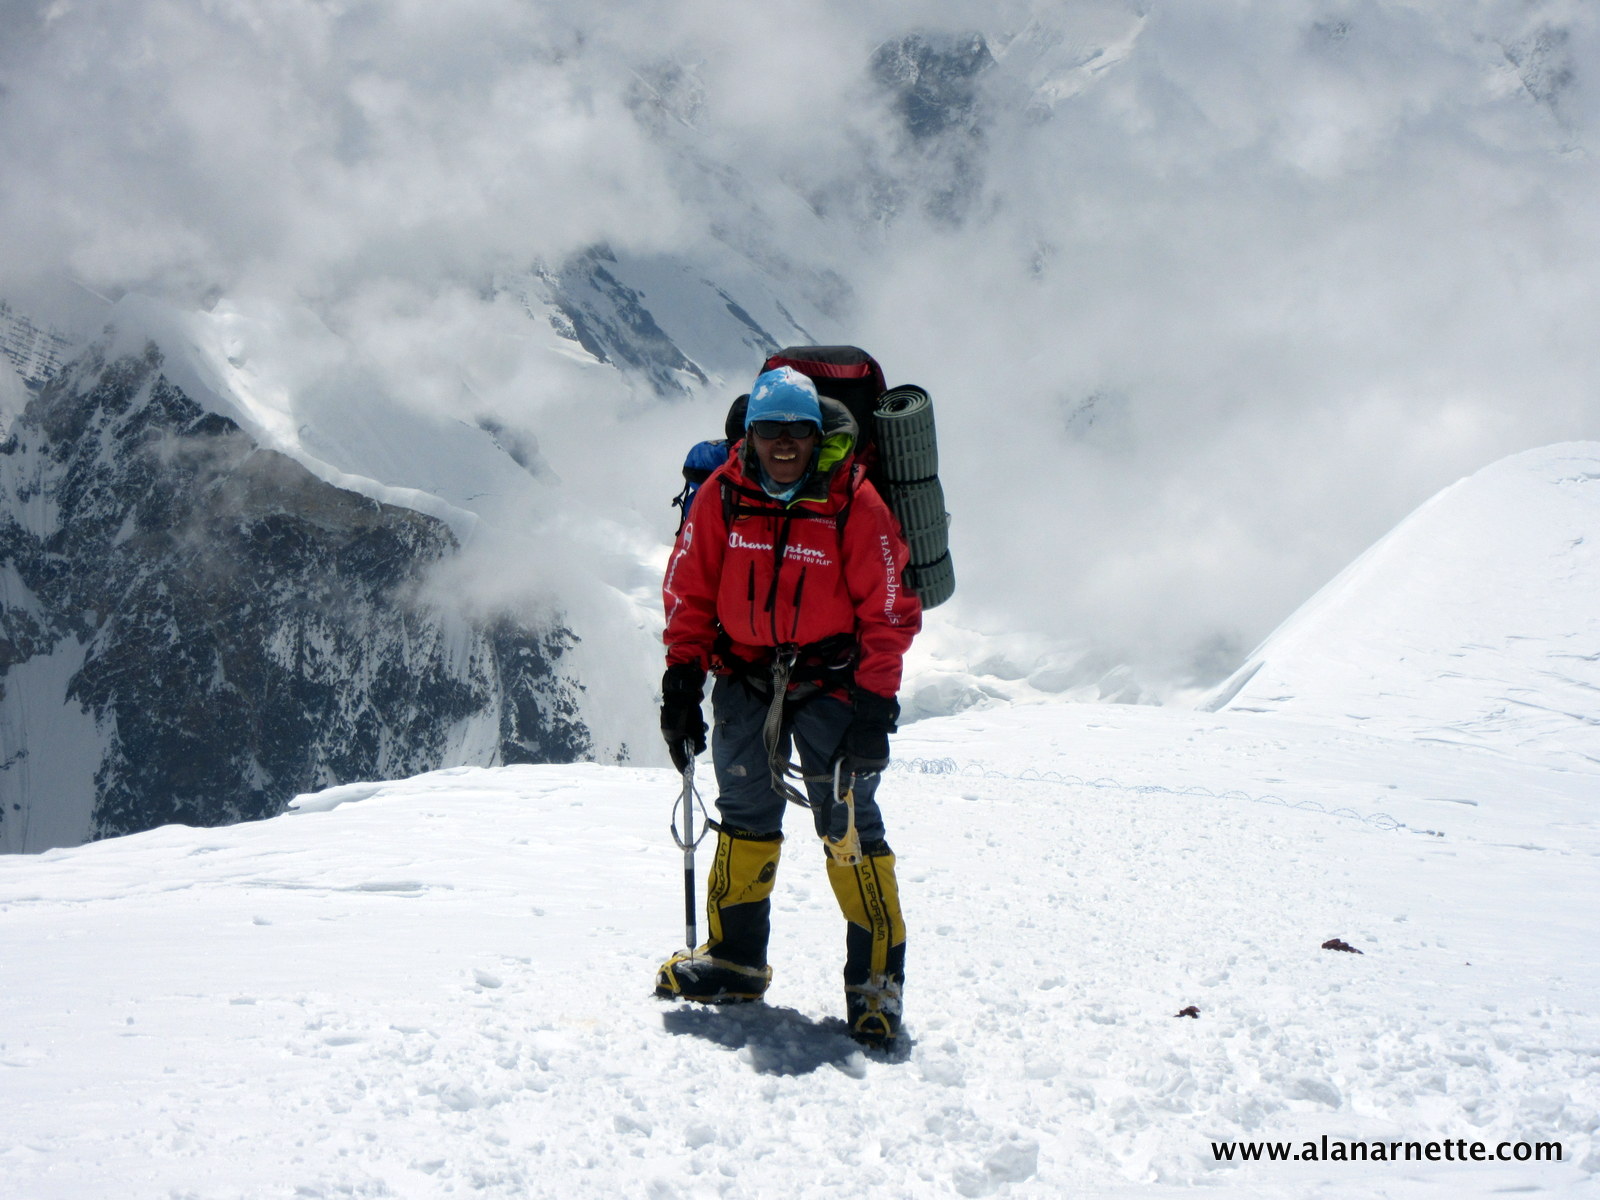 Kami on K2 in 2014